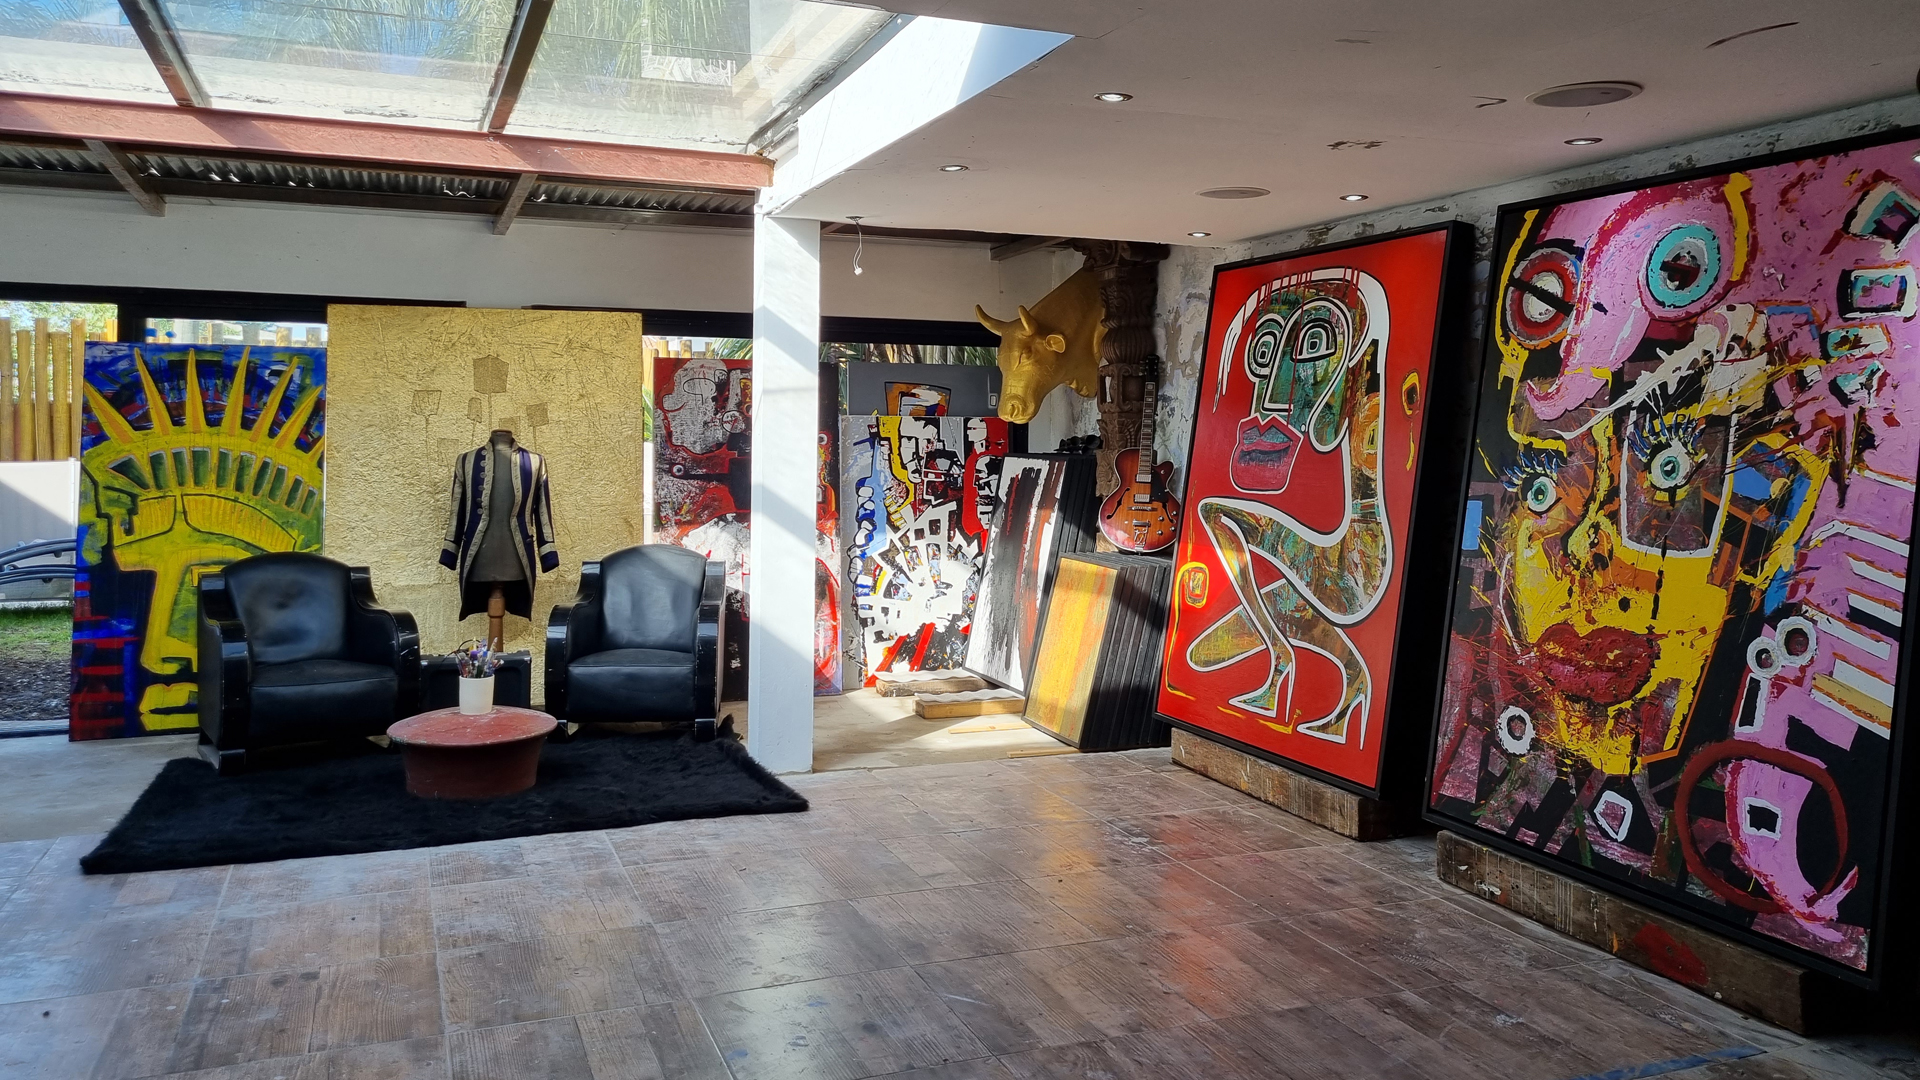 El ex garaje del artista convertido en atelier. (Crédito: Sergio Blanco)